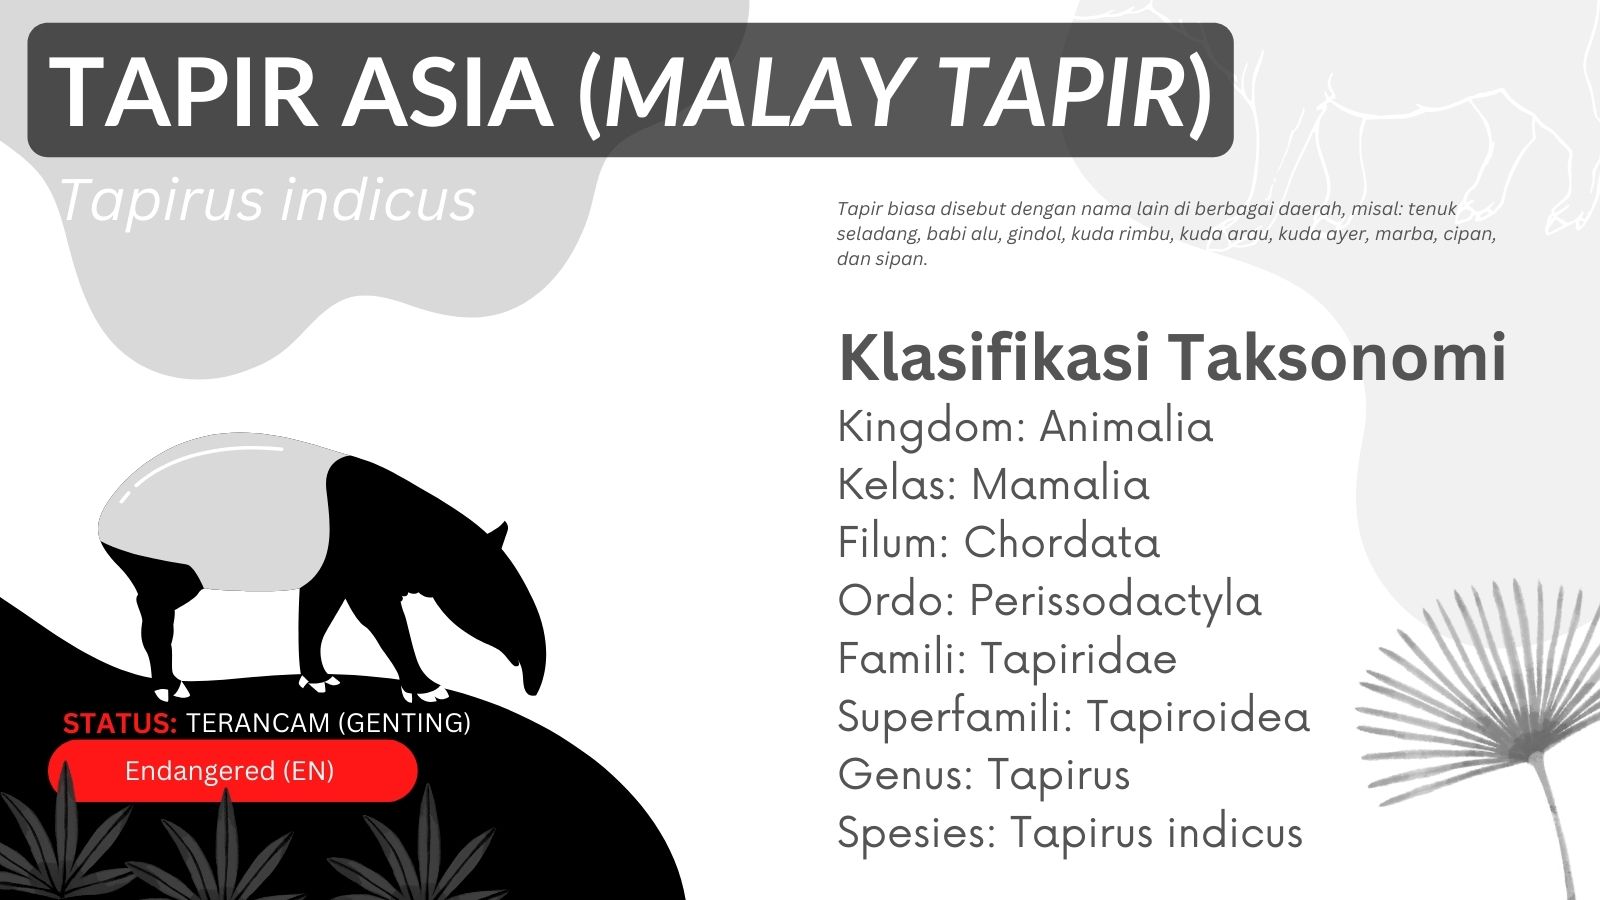 klasifikasi taksonomi tapir asia tapir malay